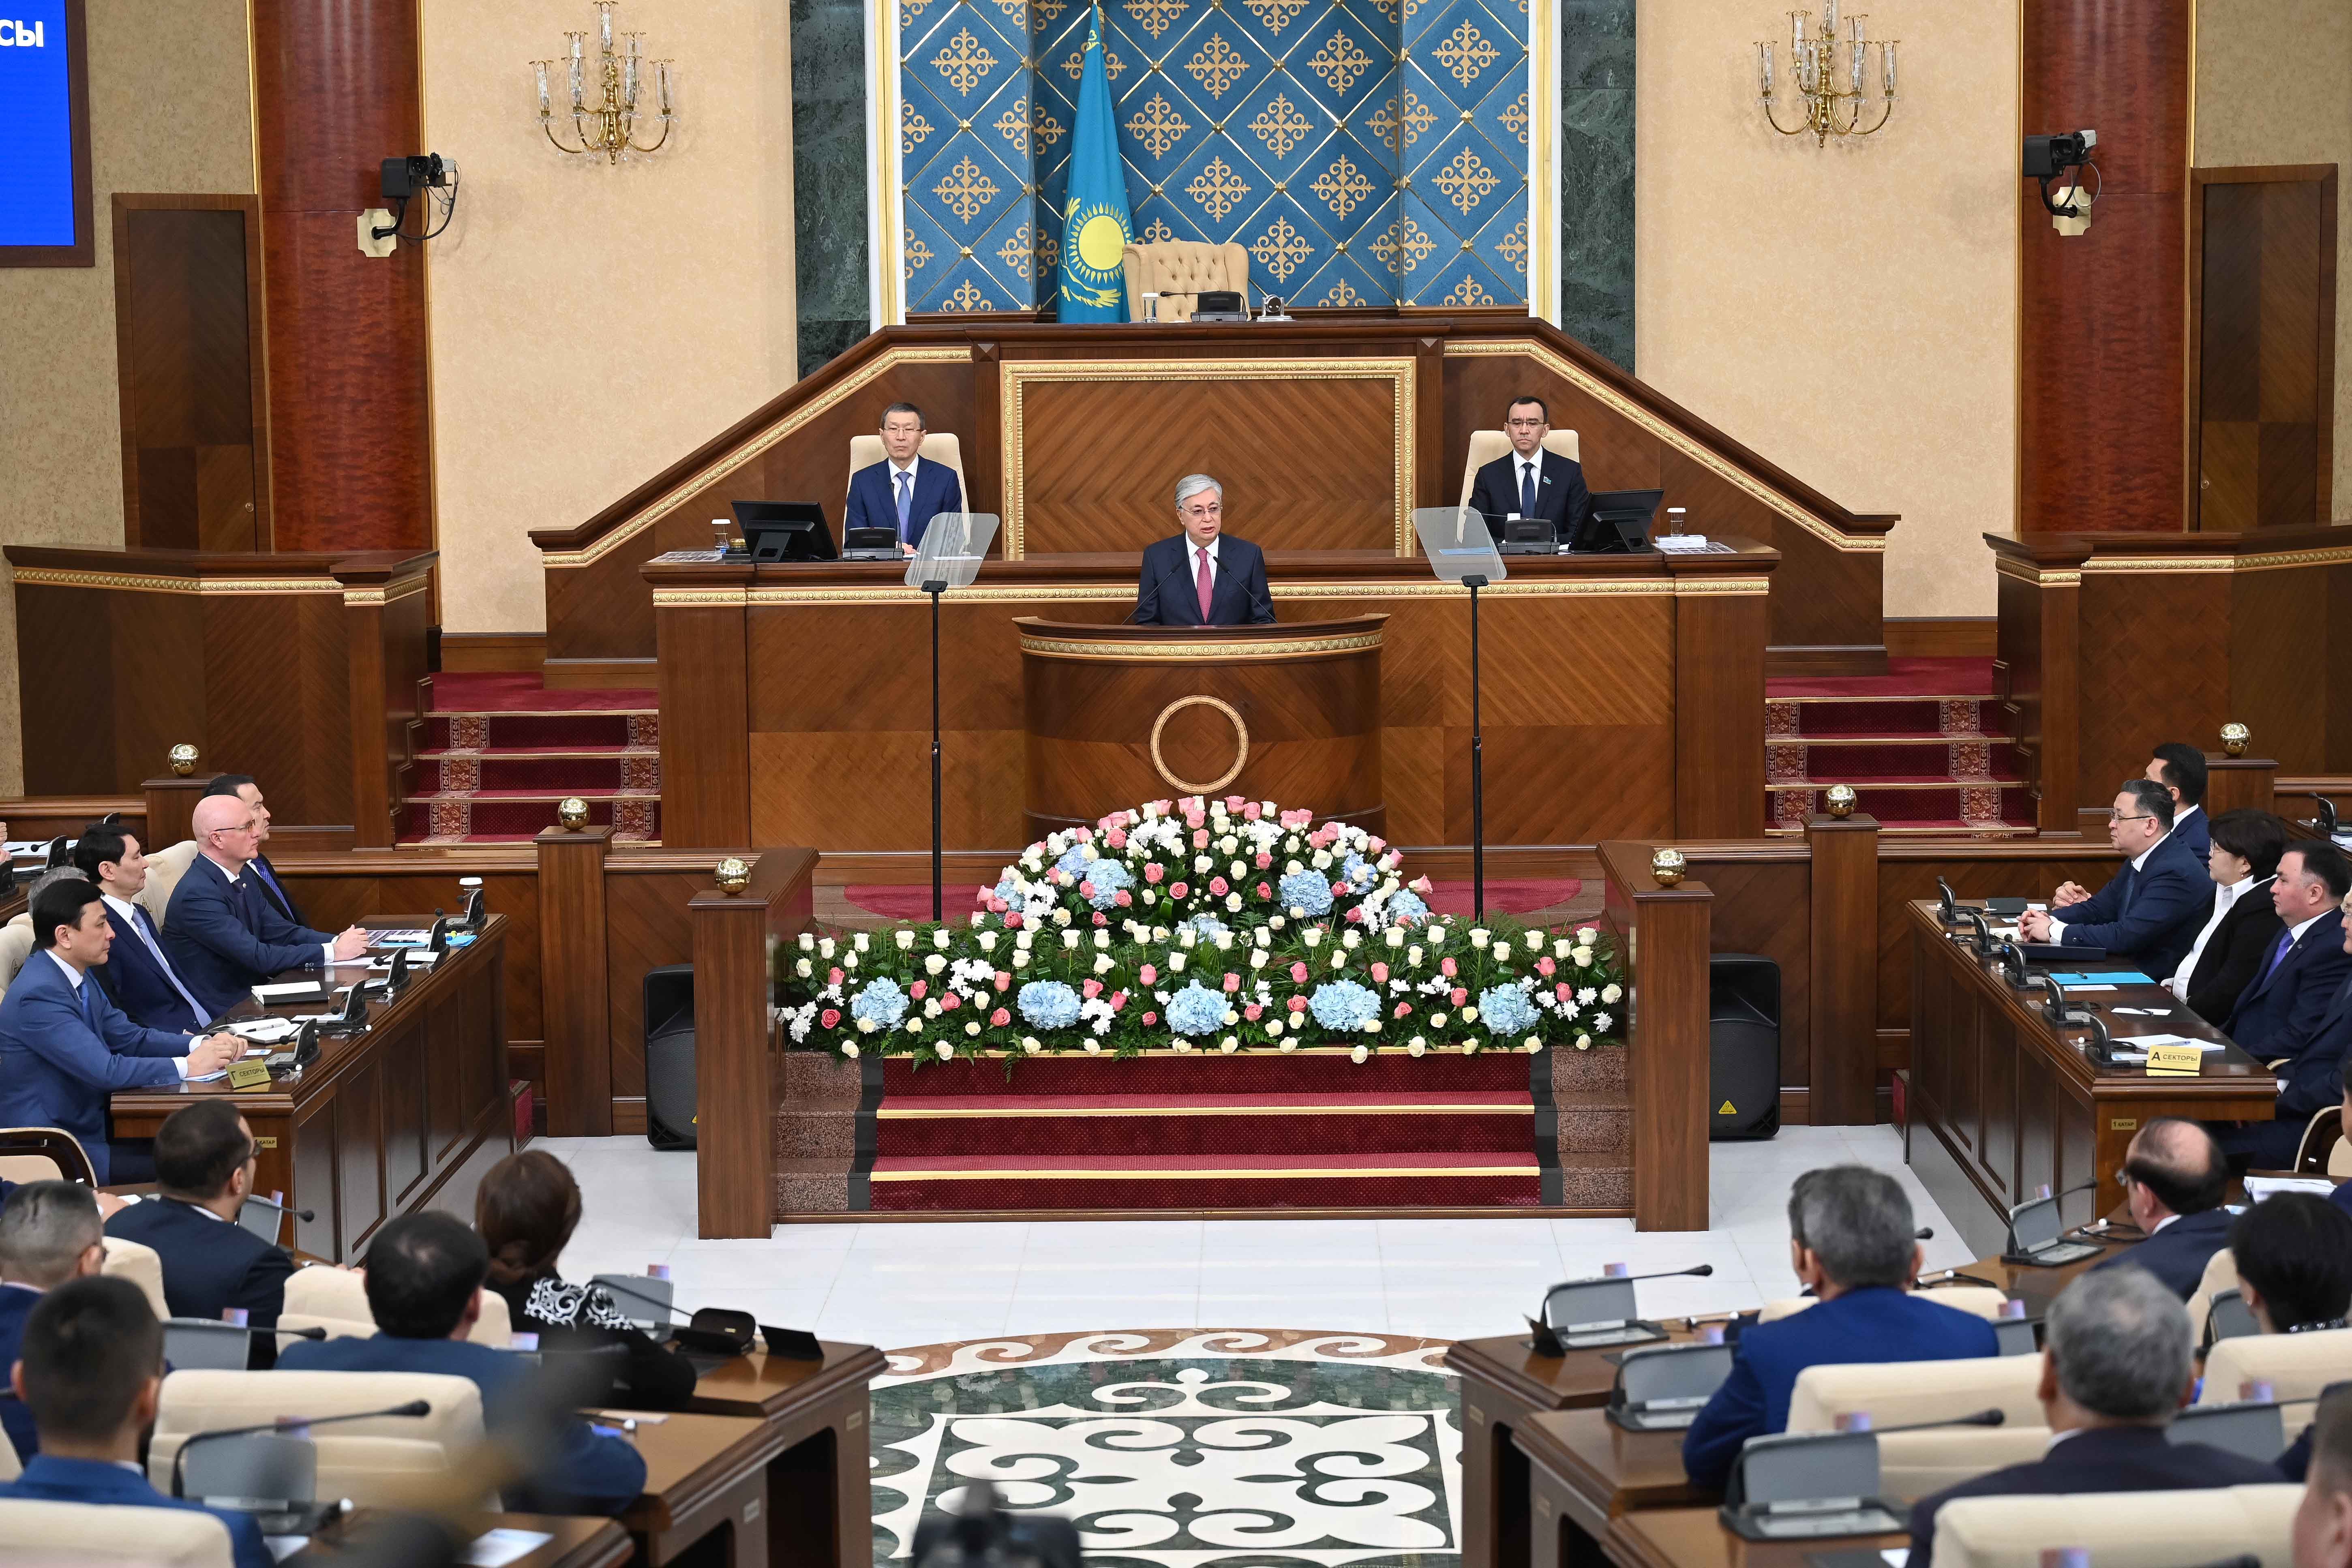 Глава государства Касым-Жомарт Токаев выступил на открытии первой сессии Парламента VIII созыва